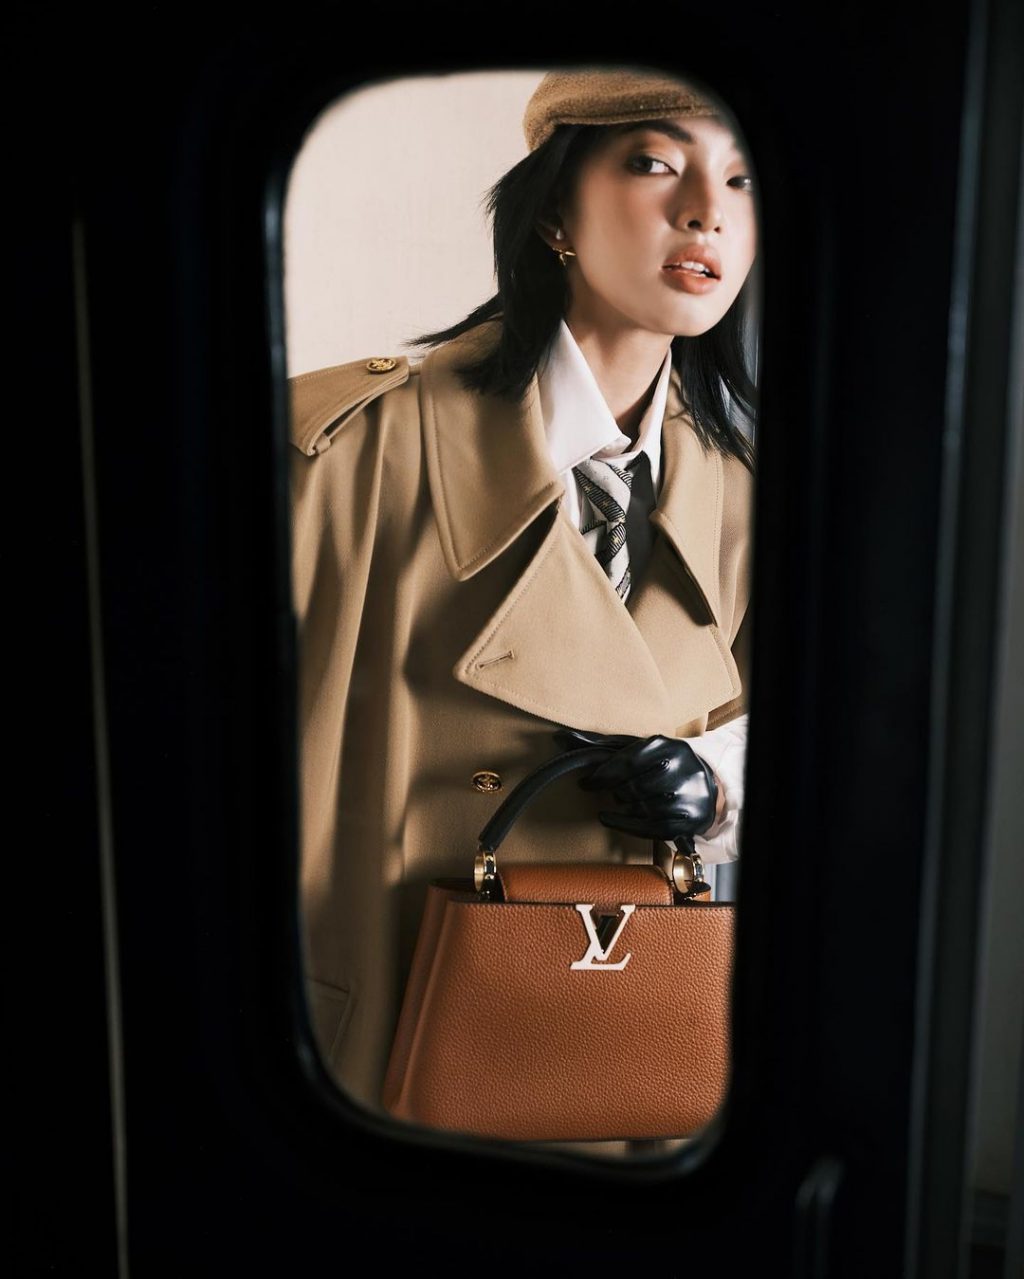 Châu Bùi đeo túi xách Louis Vuitton Capucines